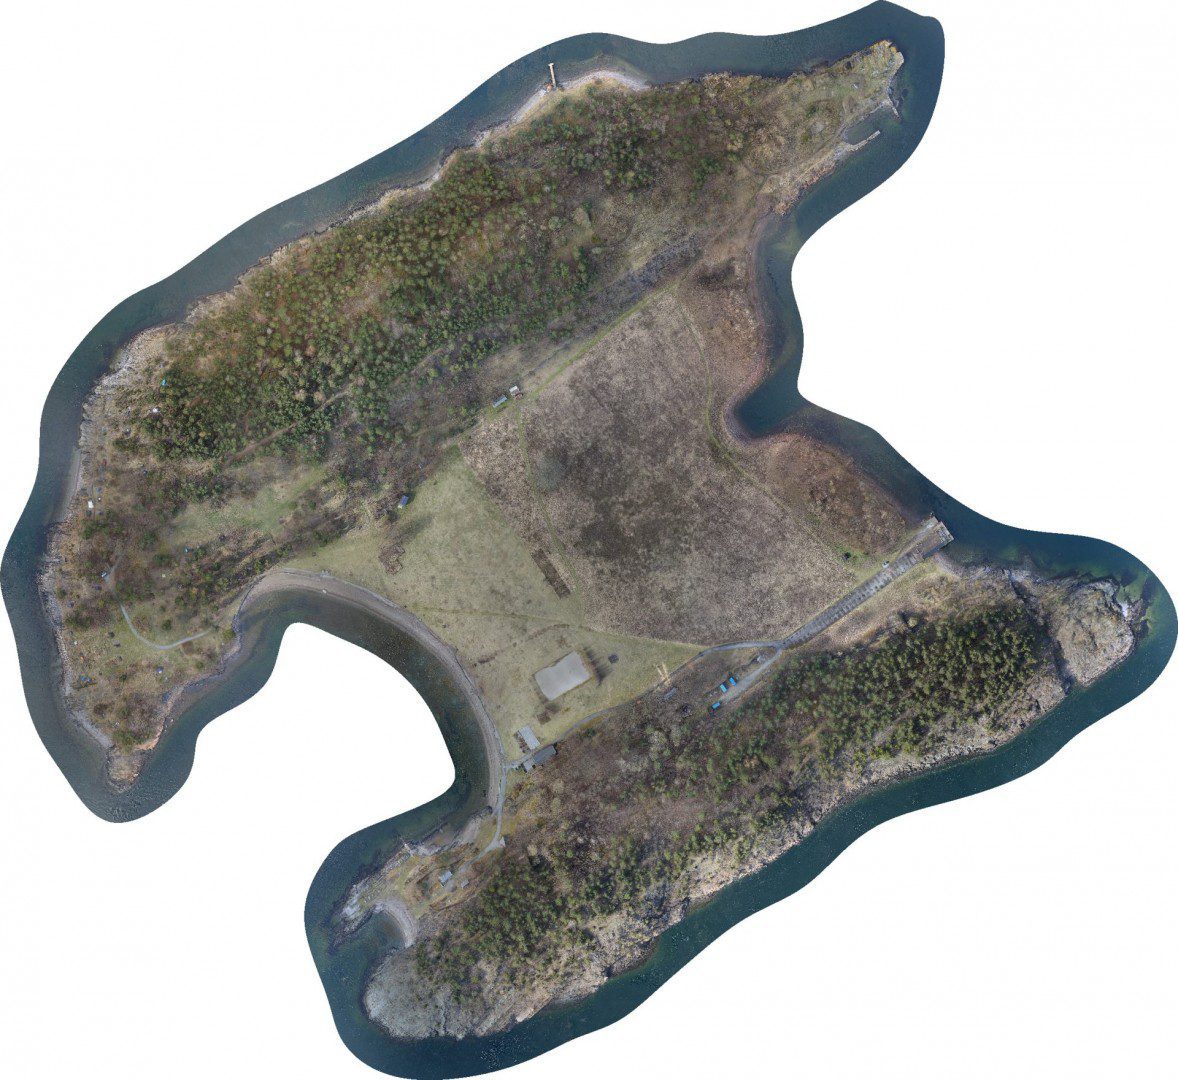 langøyene project terrain model from drone